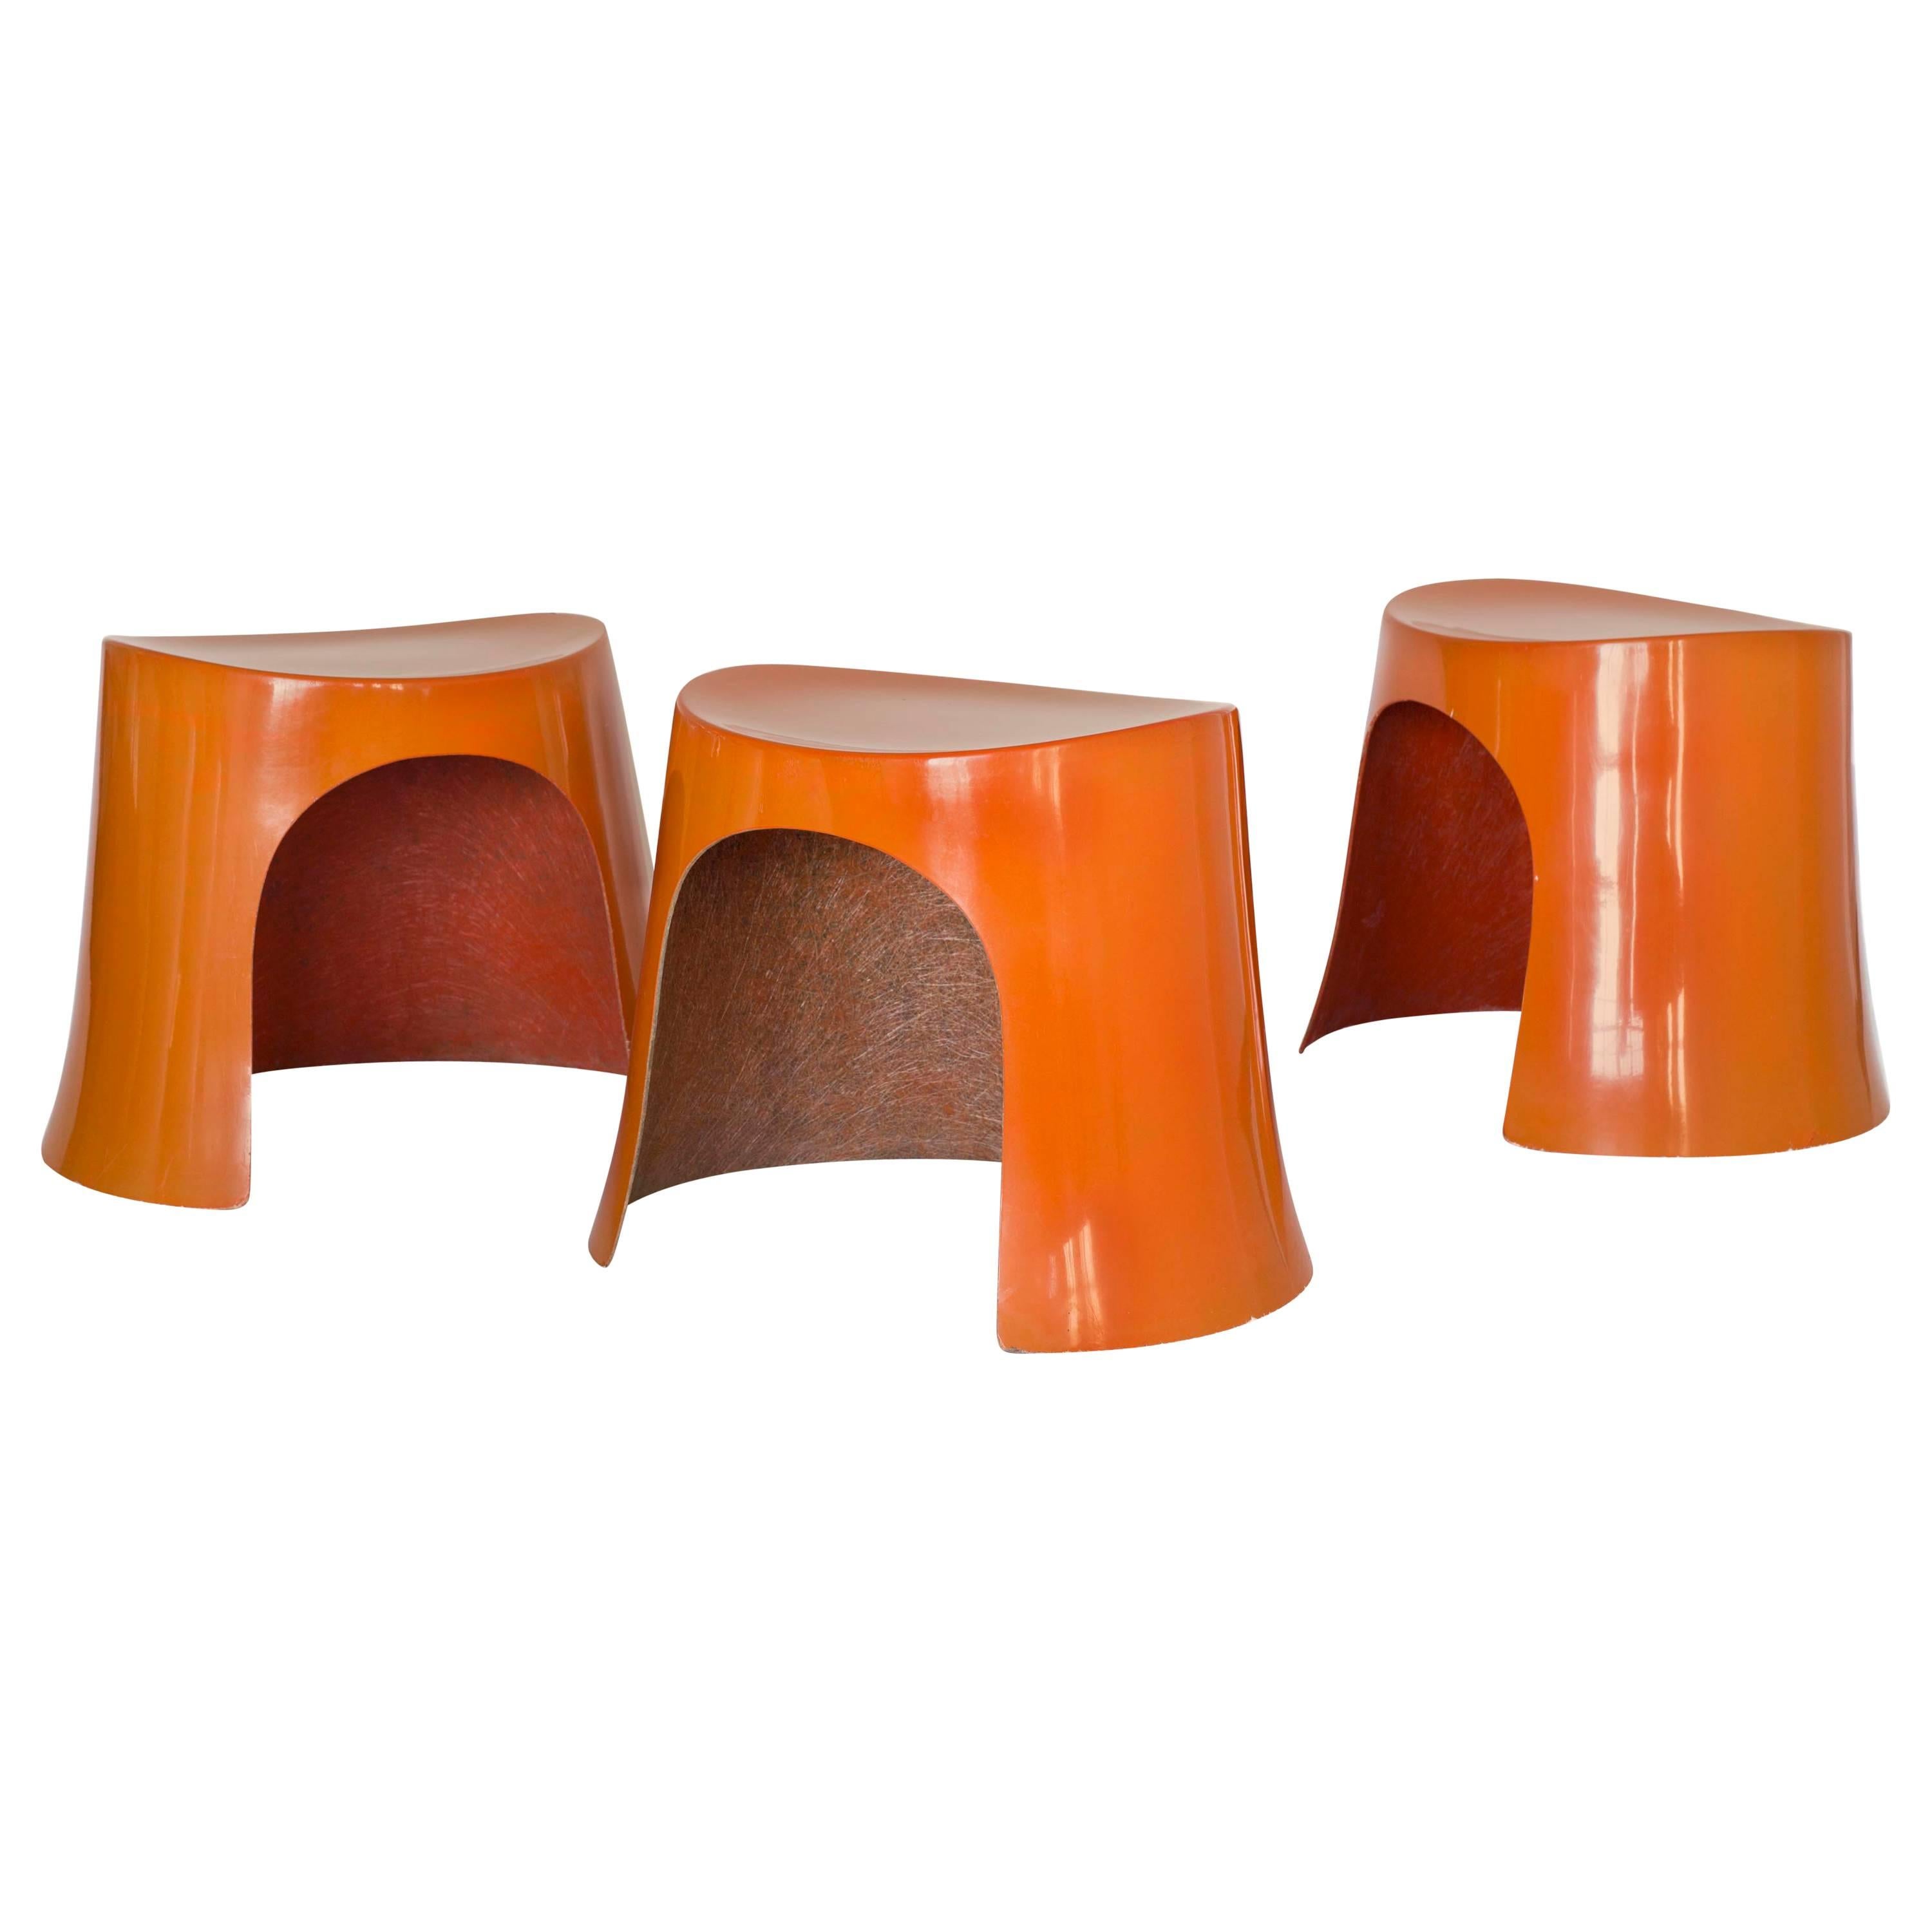 Nanna Ditzel, Set of Three Orange Fibreglass Stools, 1969